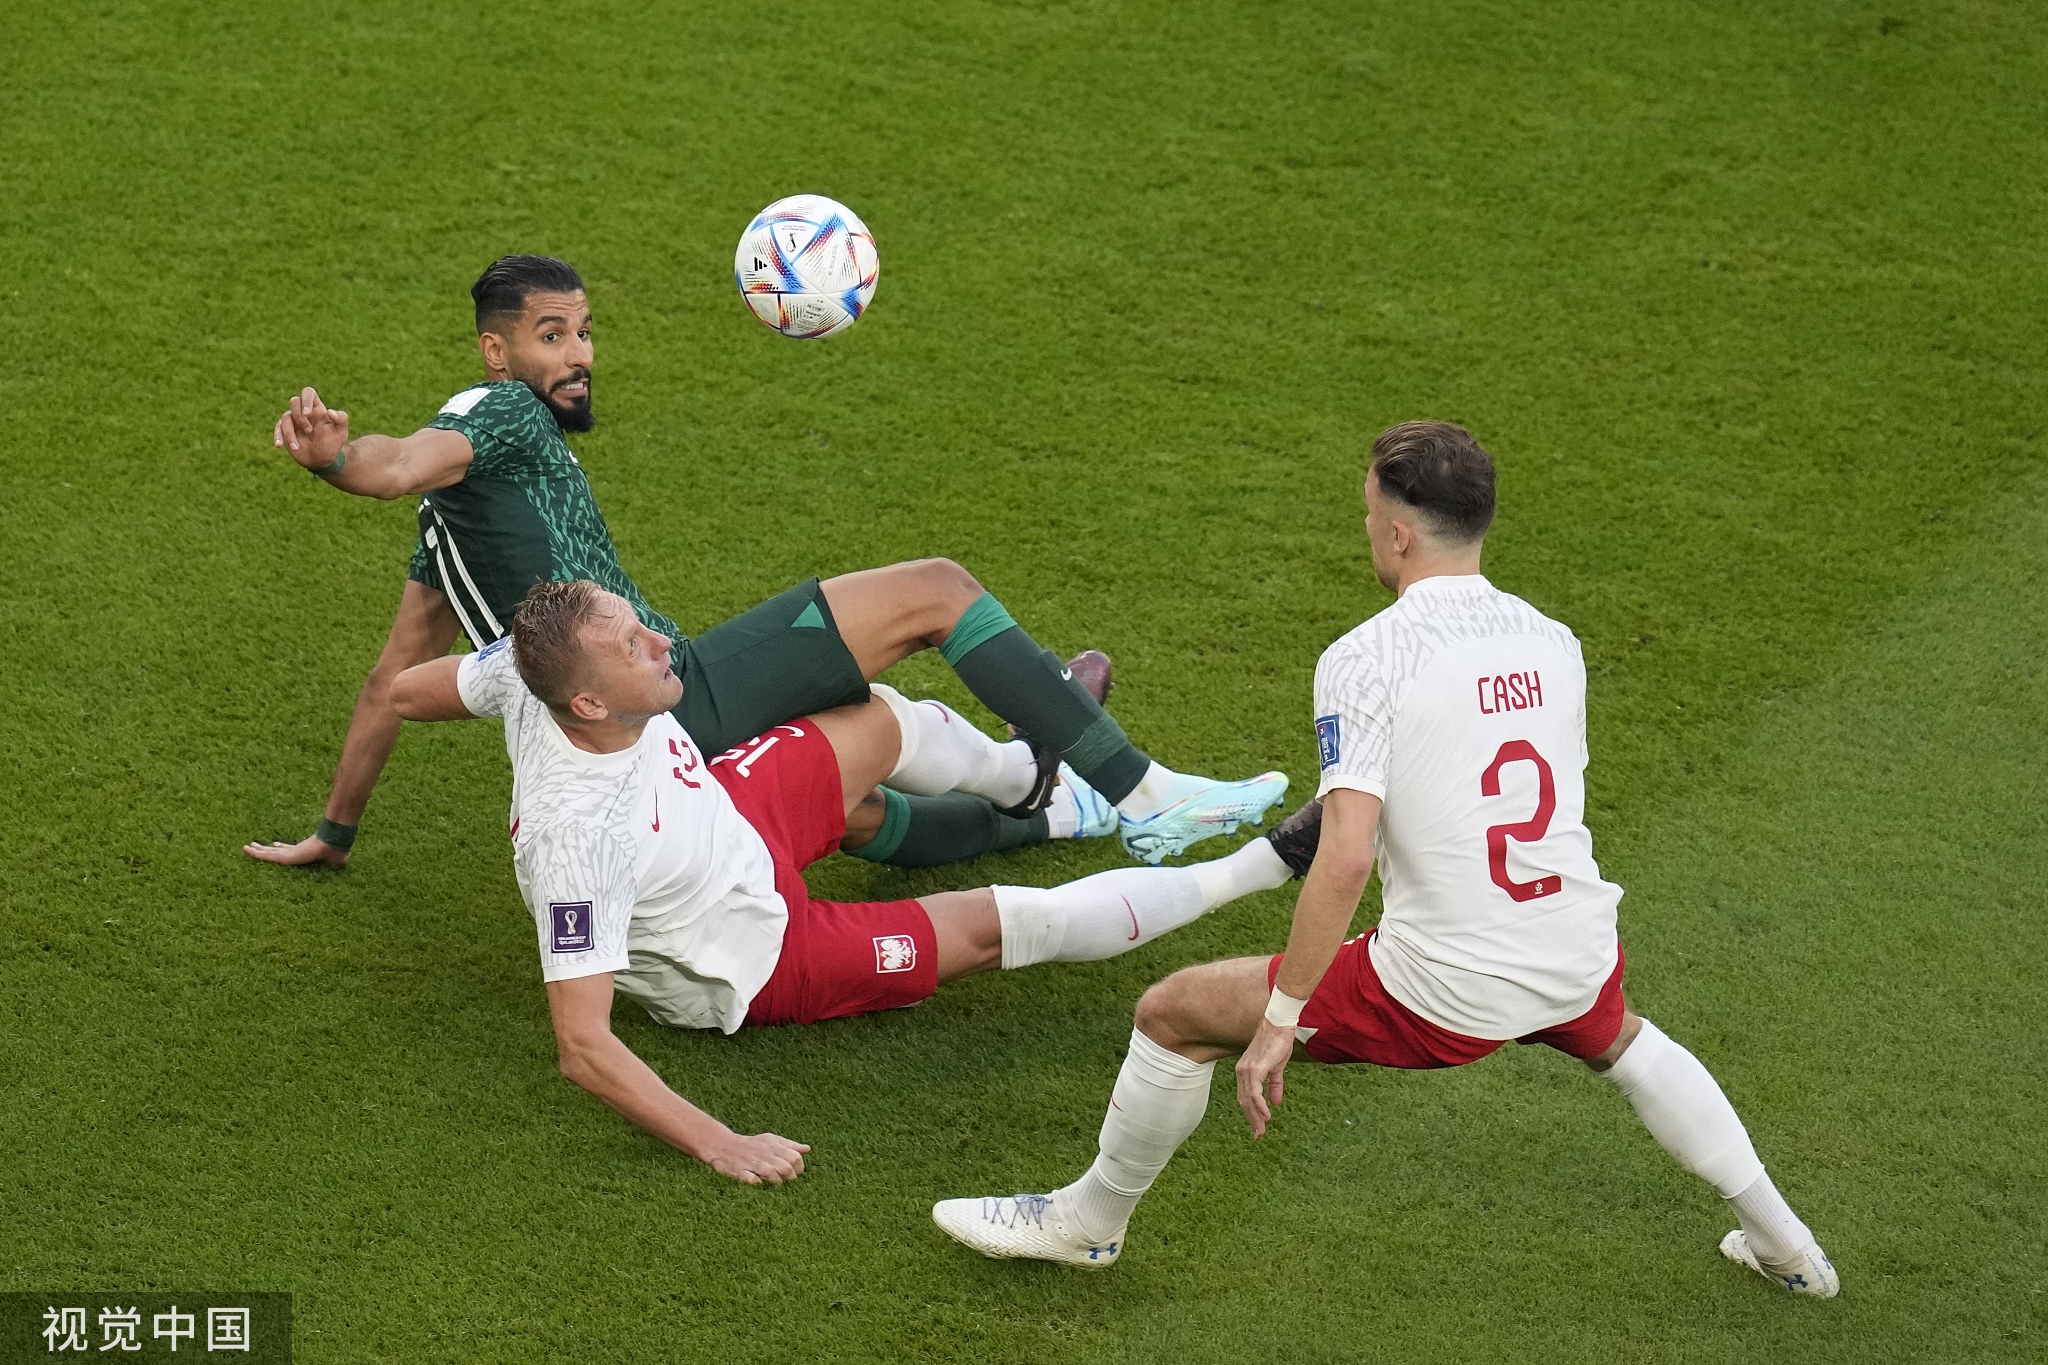 世界杯-莱万斩世界杯首球 波兰2-0阻击沙特迎首胜